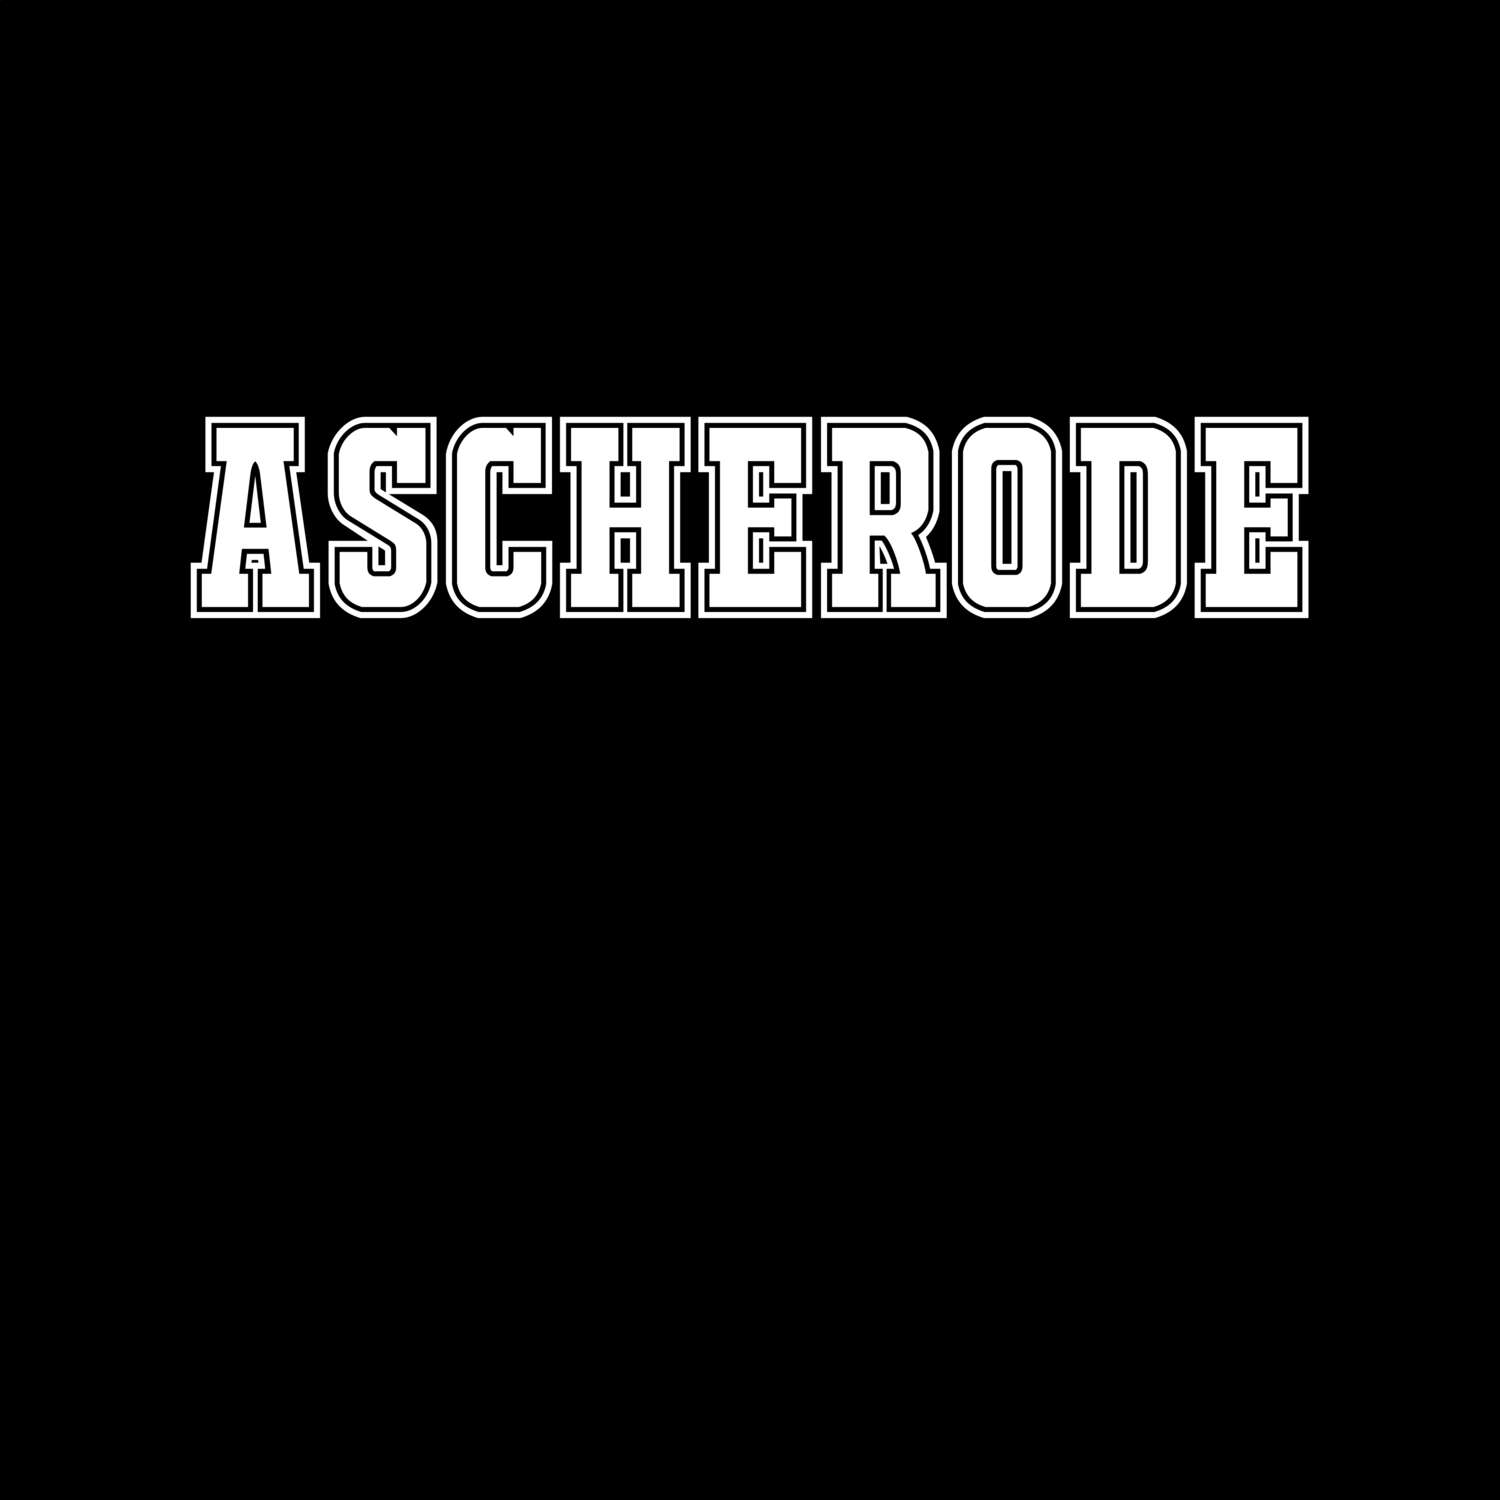 Ascherode T-Shirt »Classic«